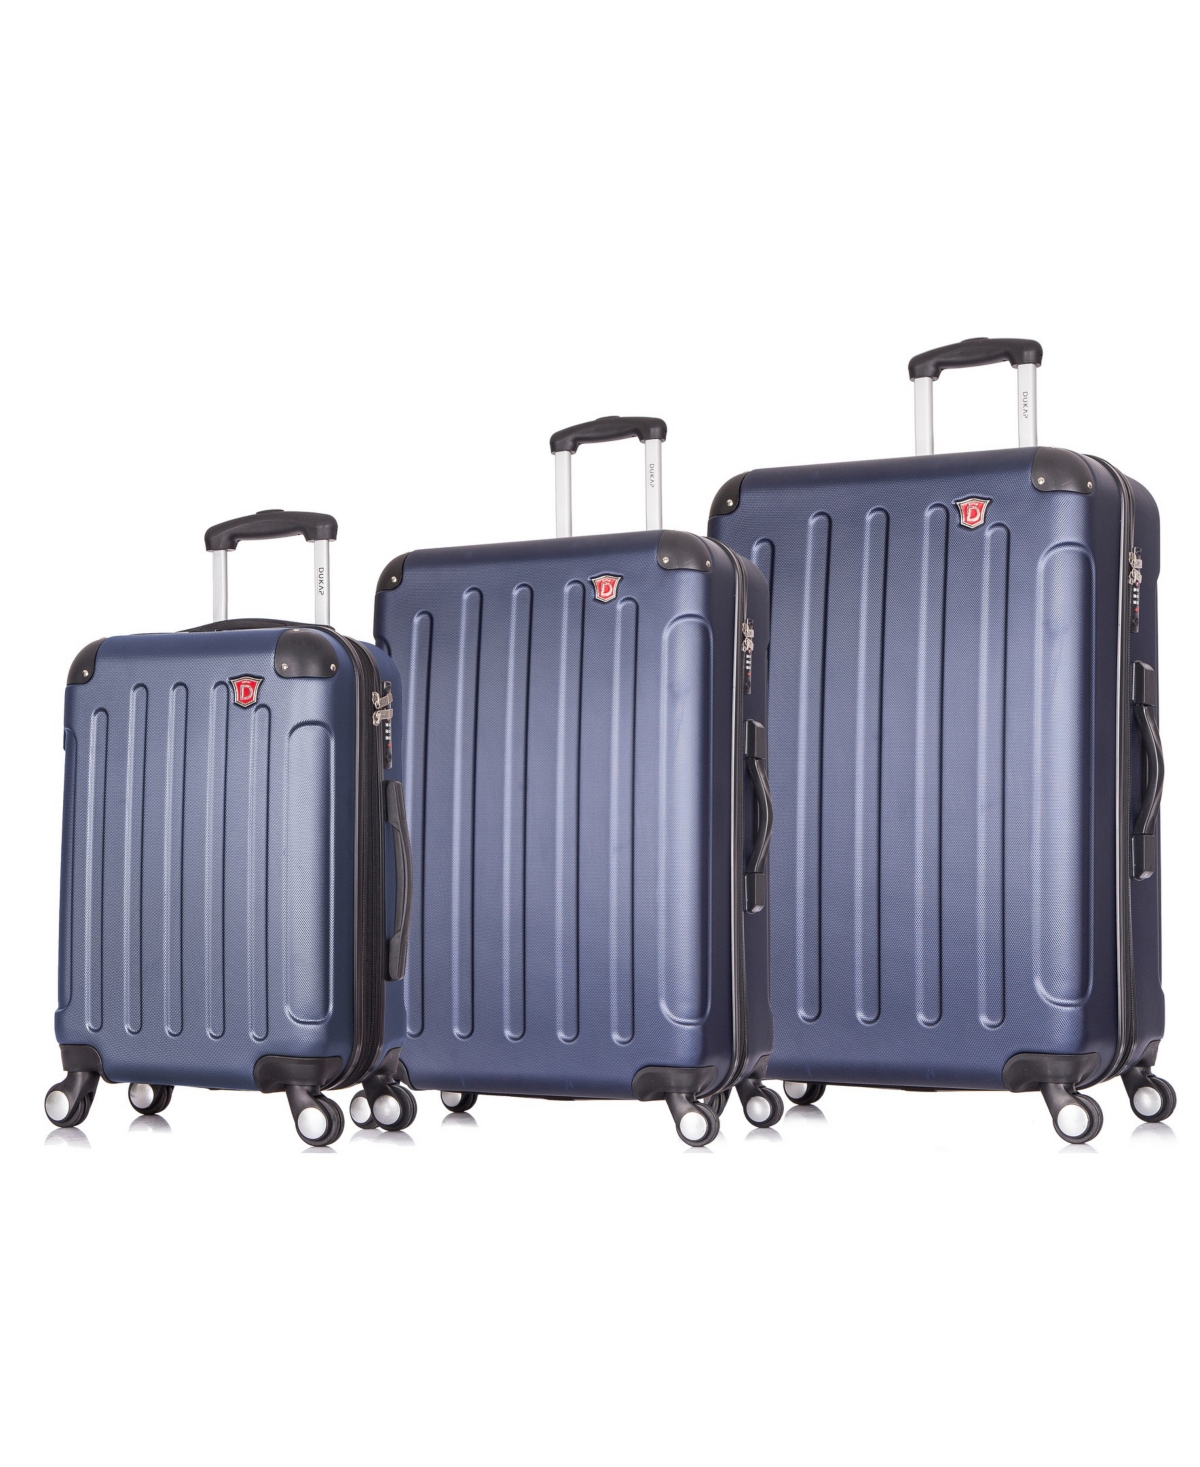 Intely 3-Pc. Hardside Tech Luggage Set - Grey